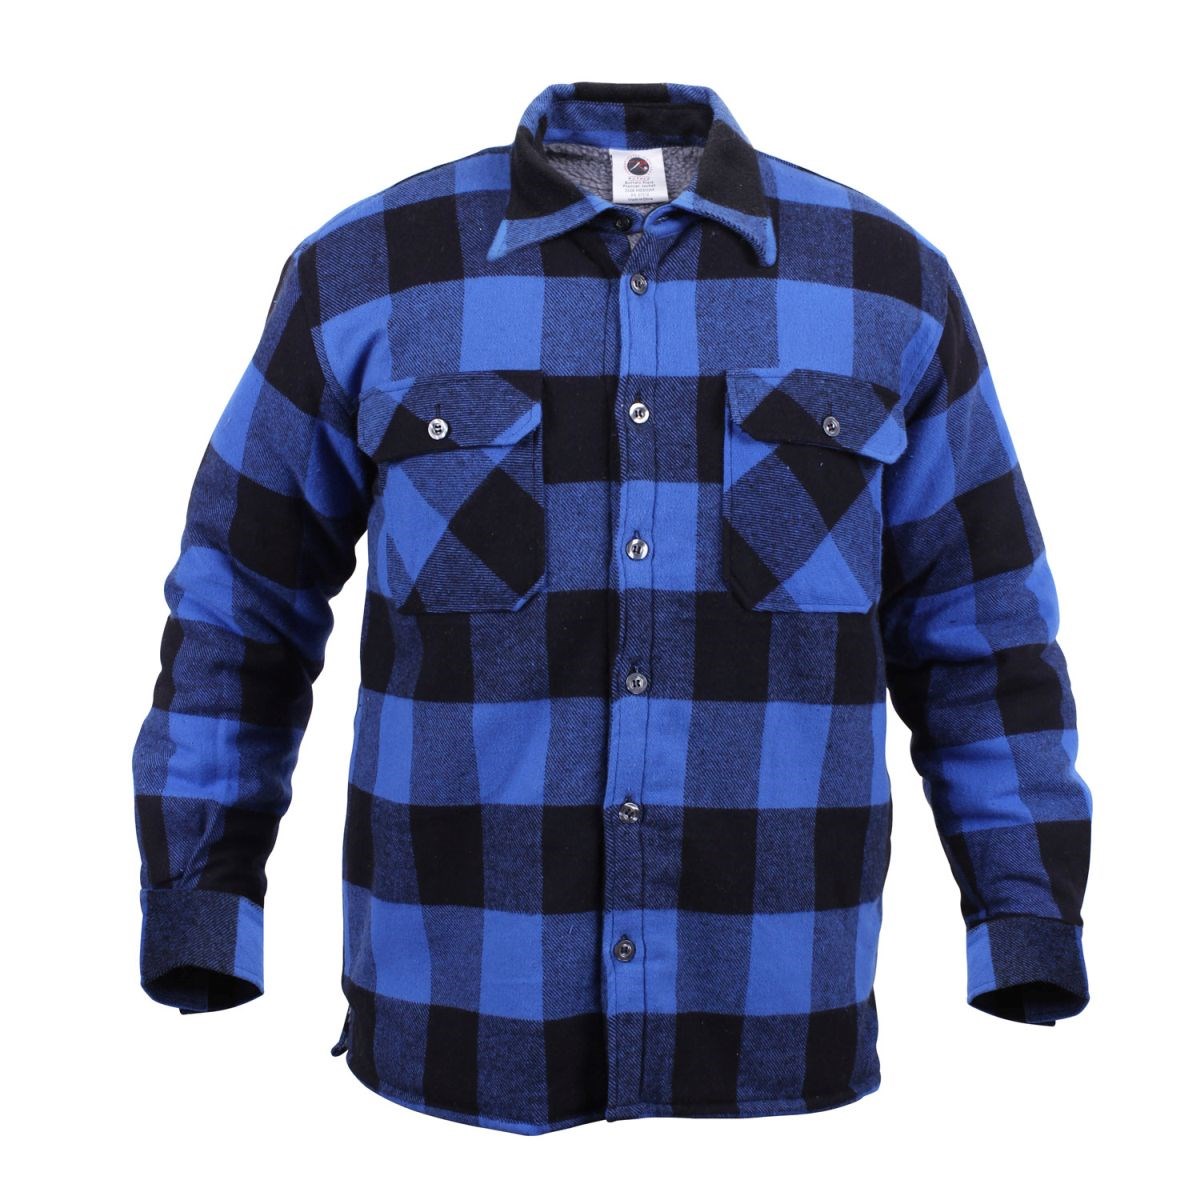 Lumberjack warm plaid shirt BLUE ROTHCO 3739BLU L-11